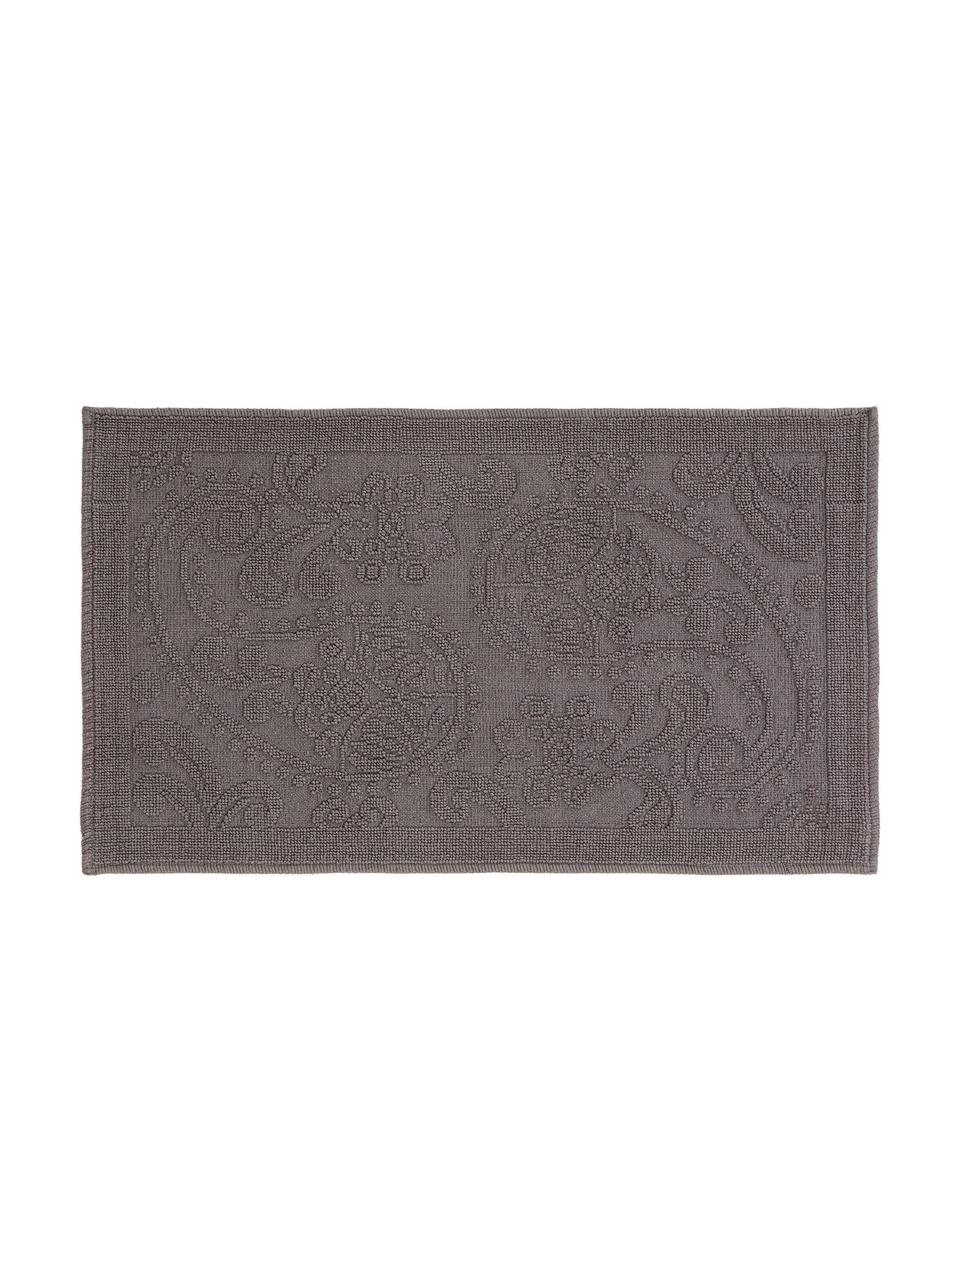 Badvorleger Kaya in Grau mit floralem Muster, 100% Baumwolle, Dunkelgrau, B 60 x L 100 cm